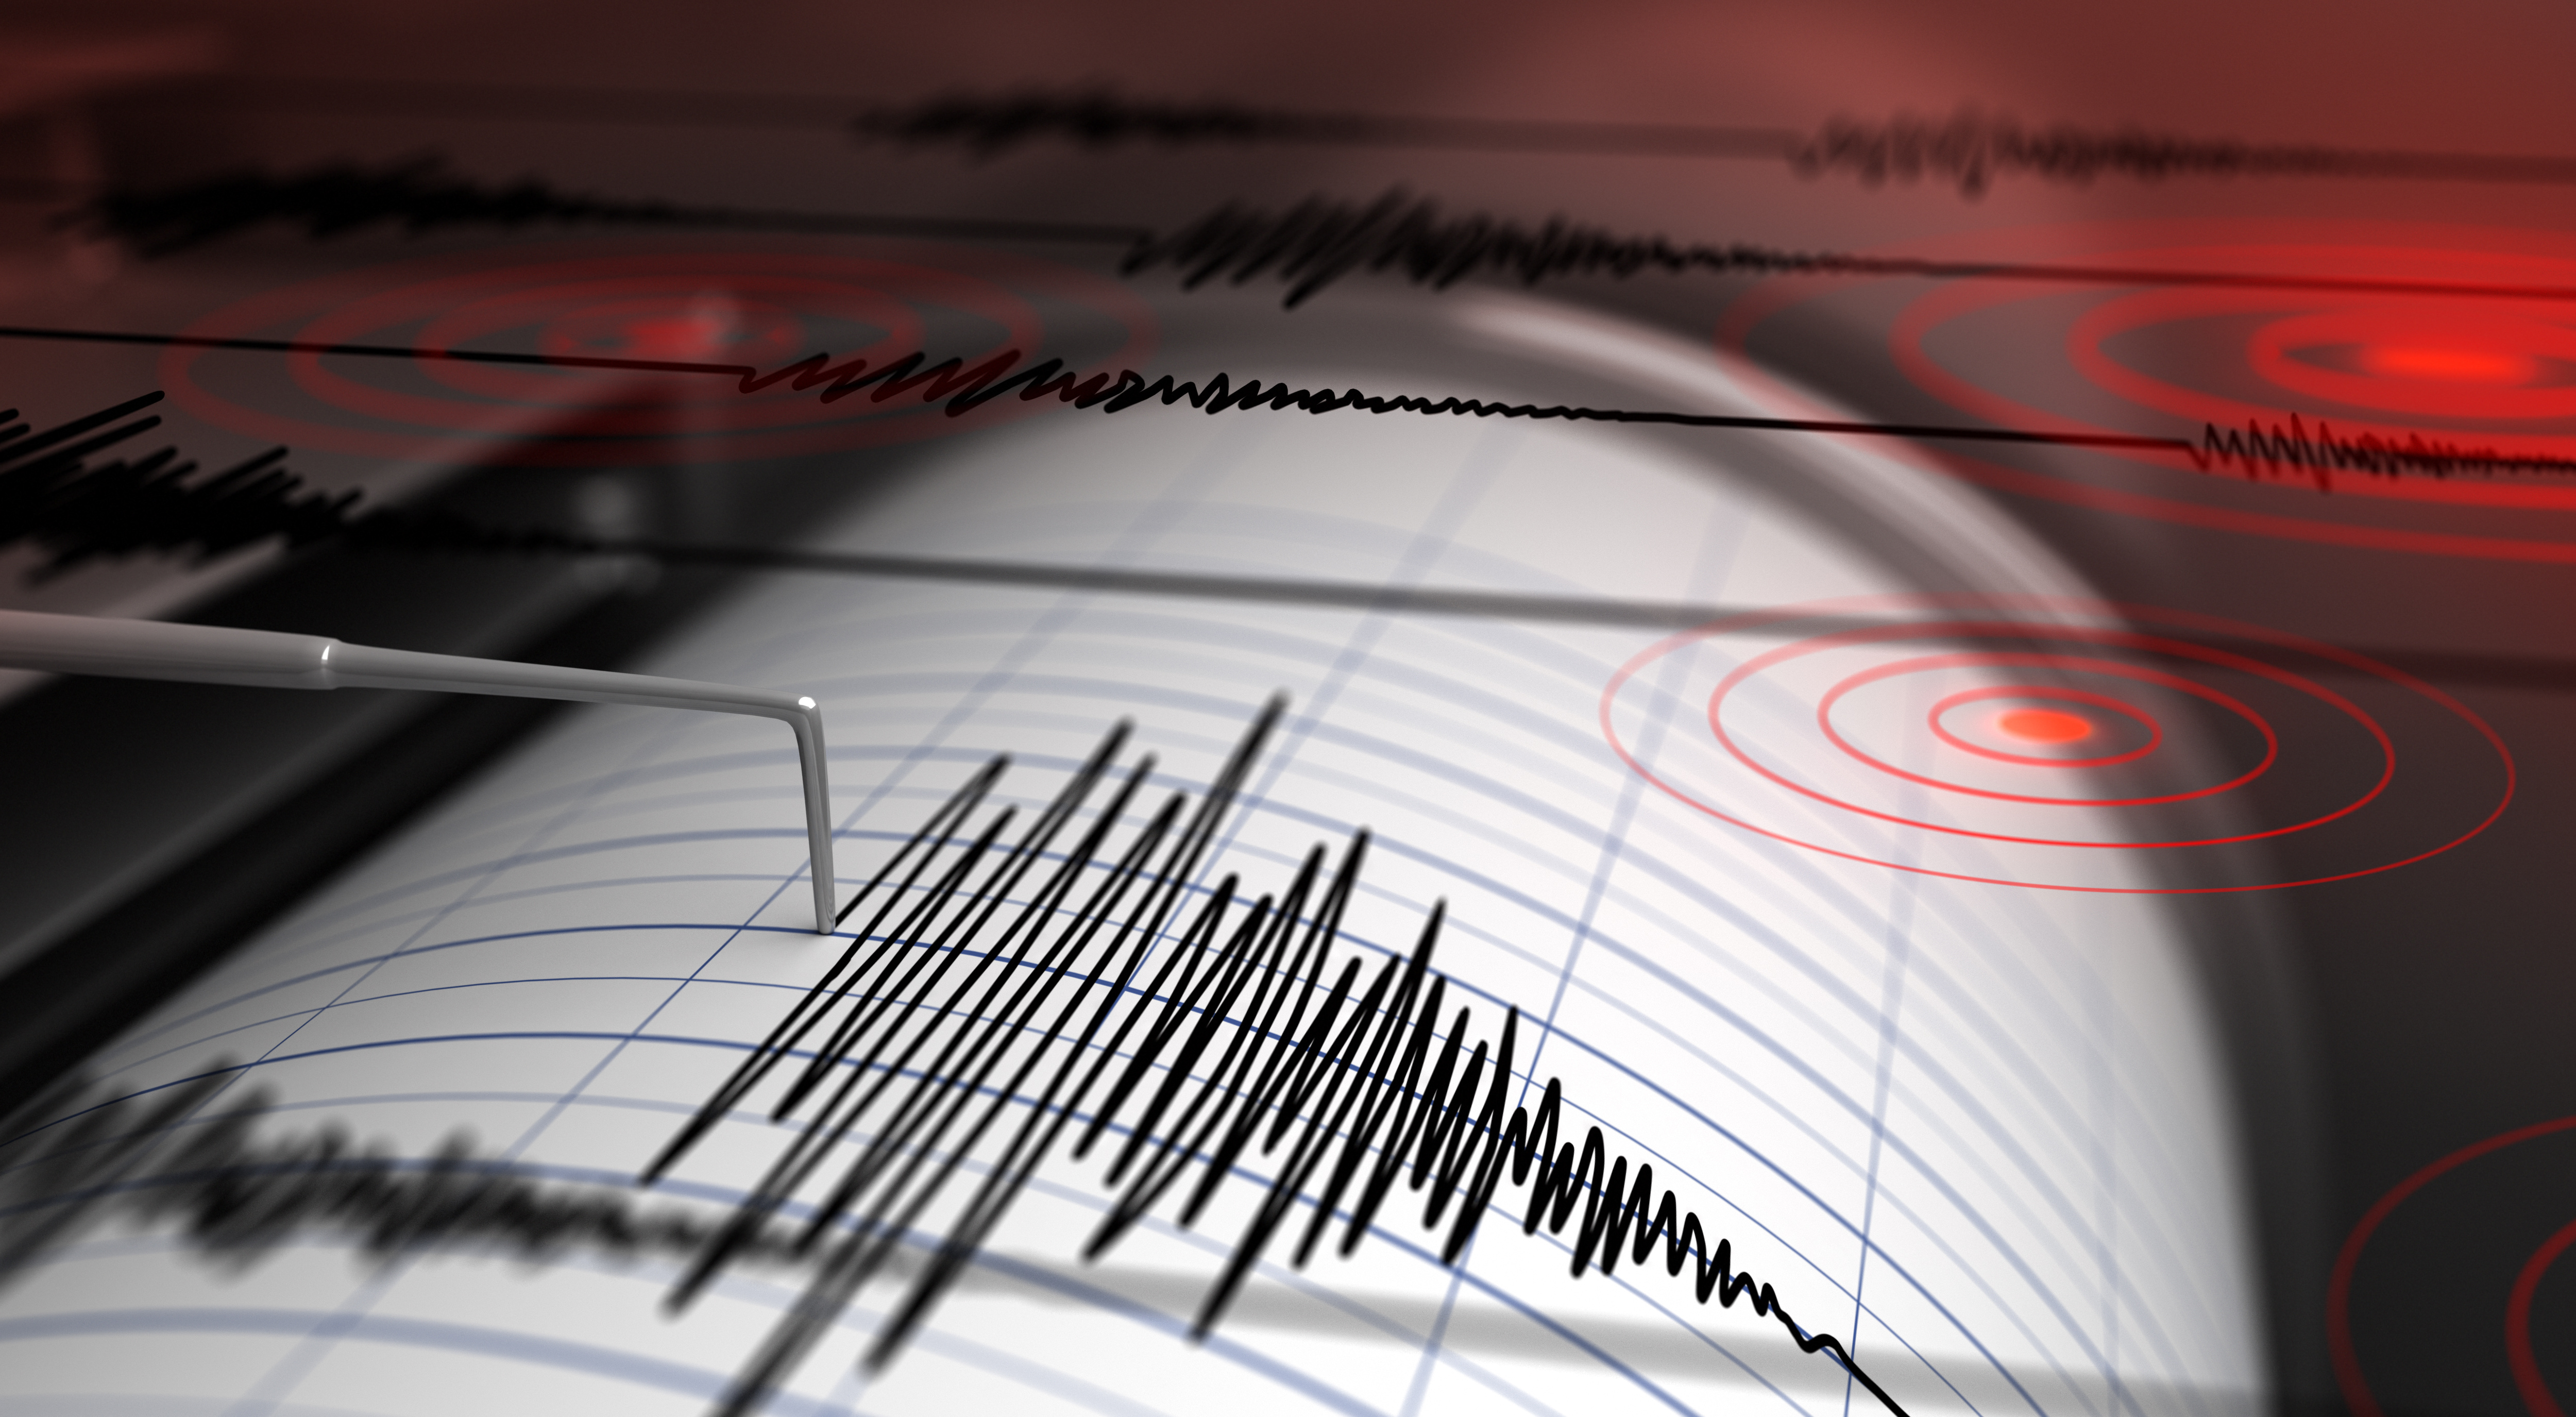 Erdbeben Messgerät 